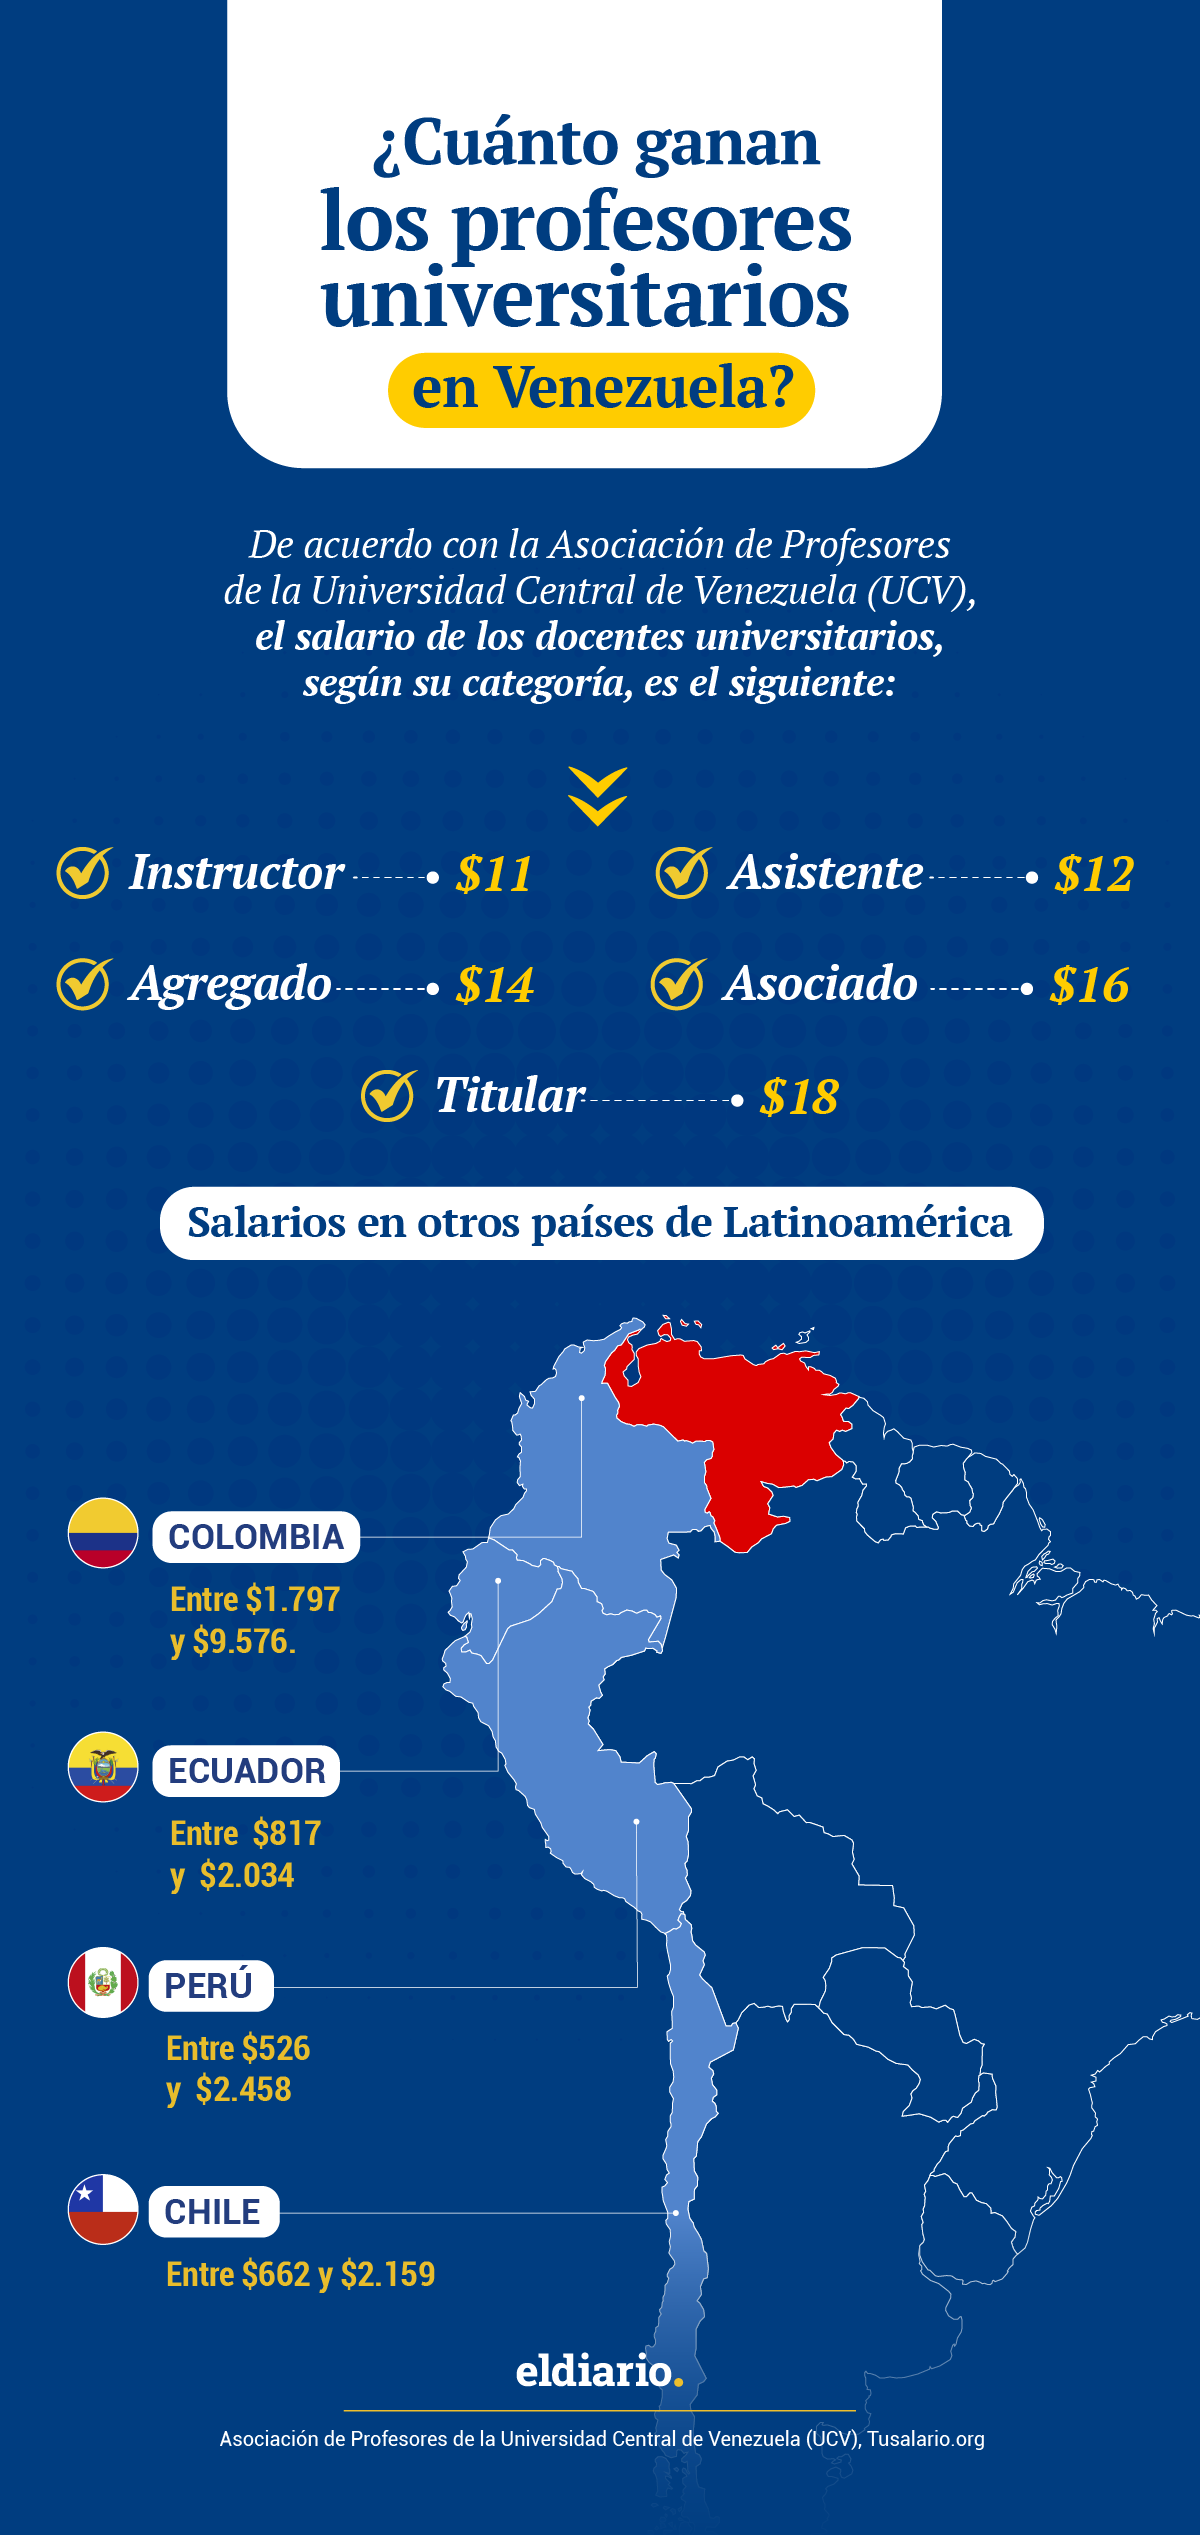 ¿Cuánto ganan los profesores universitarios en Venezuela y otros países de Latinoamérica?